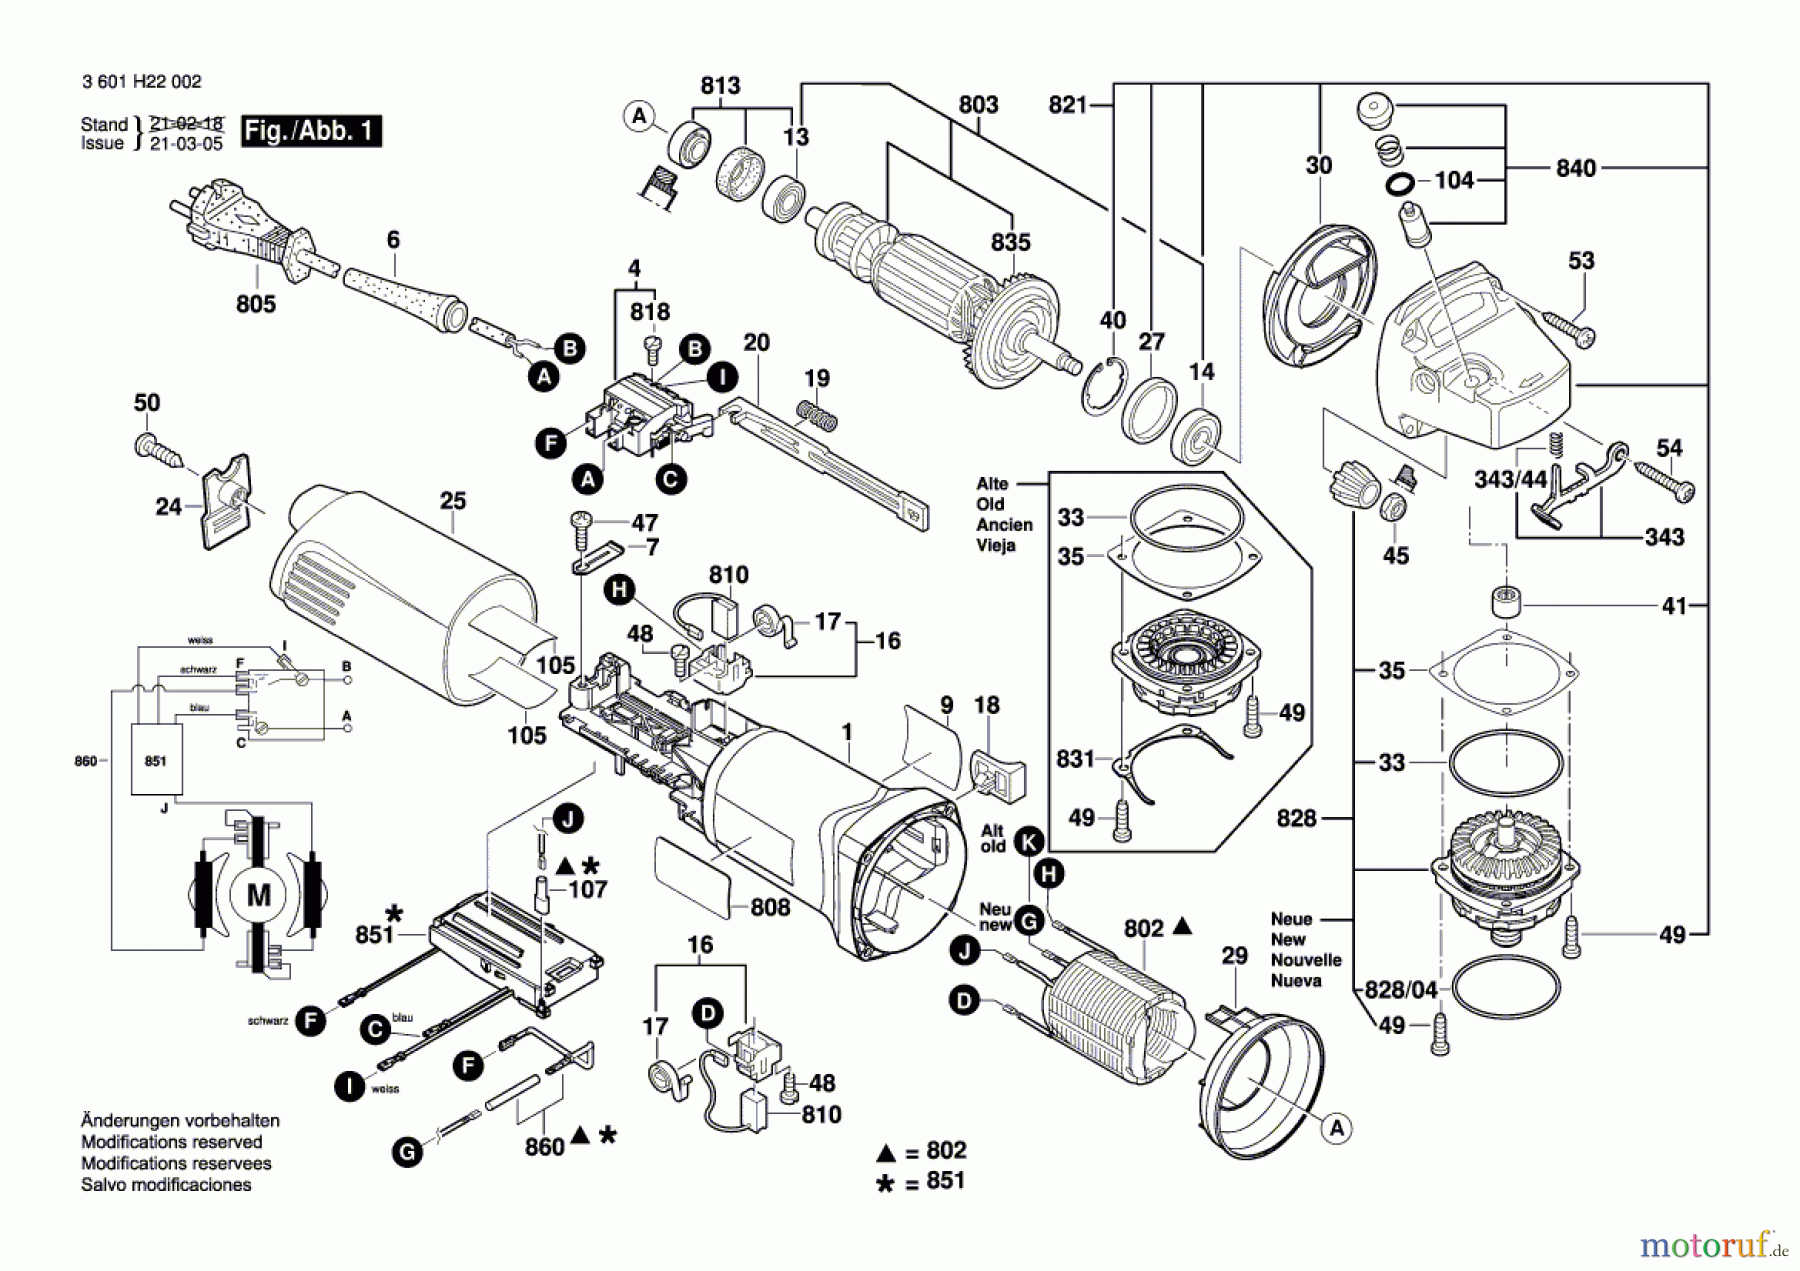  Bosch Werkzeug Winkelschleifer BAG 125-1 Seite 1